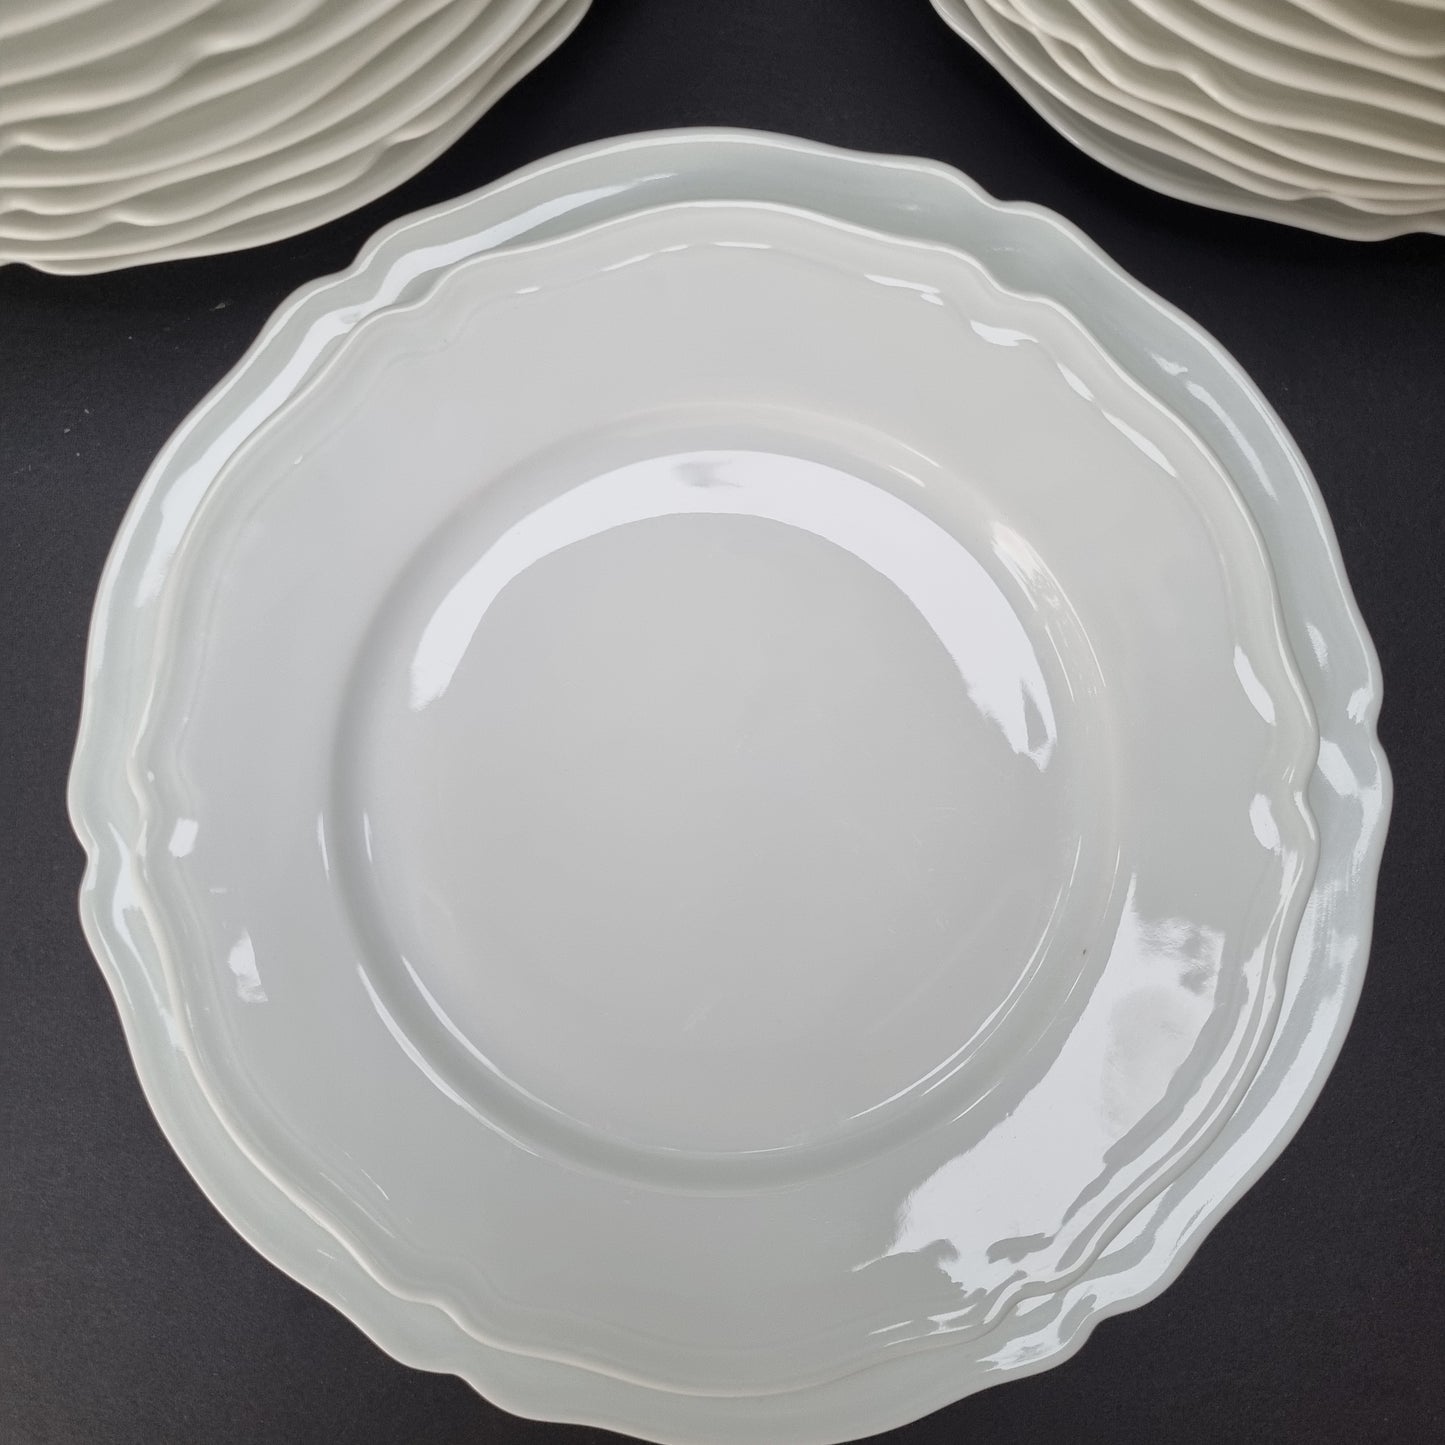 La vajilla blanca de porcelana de Limoges